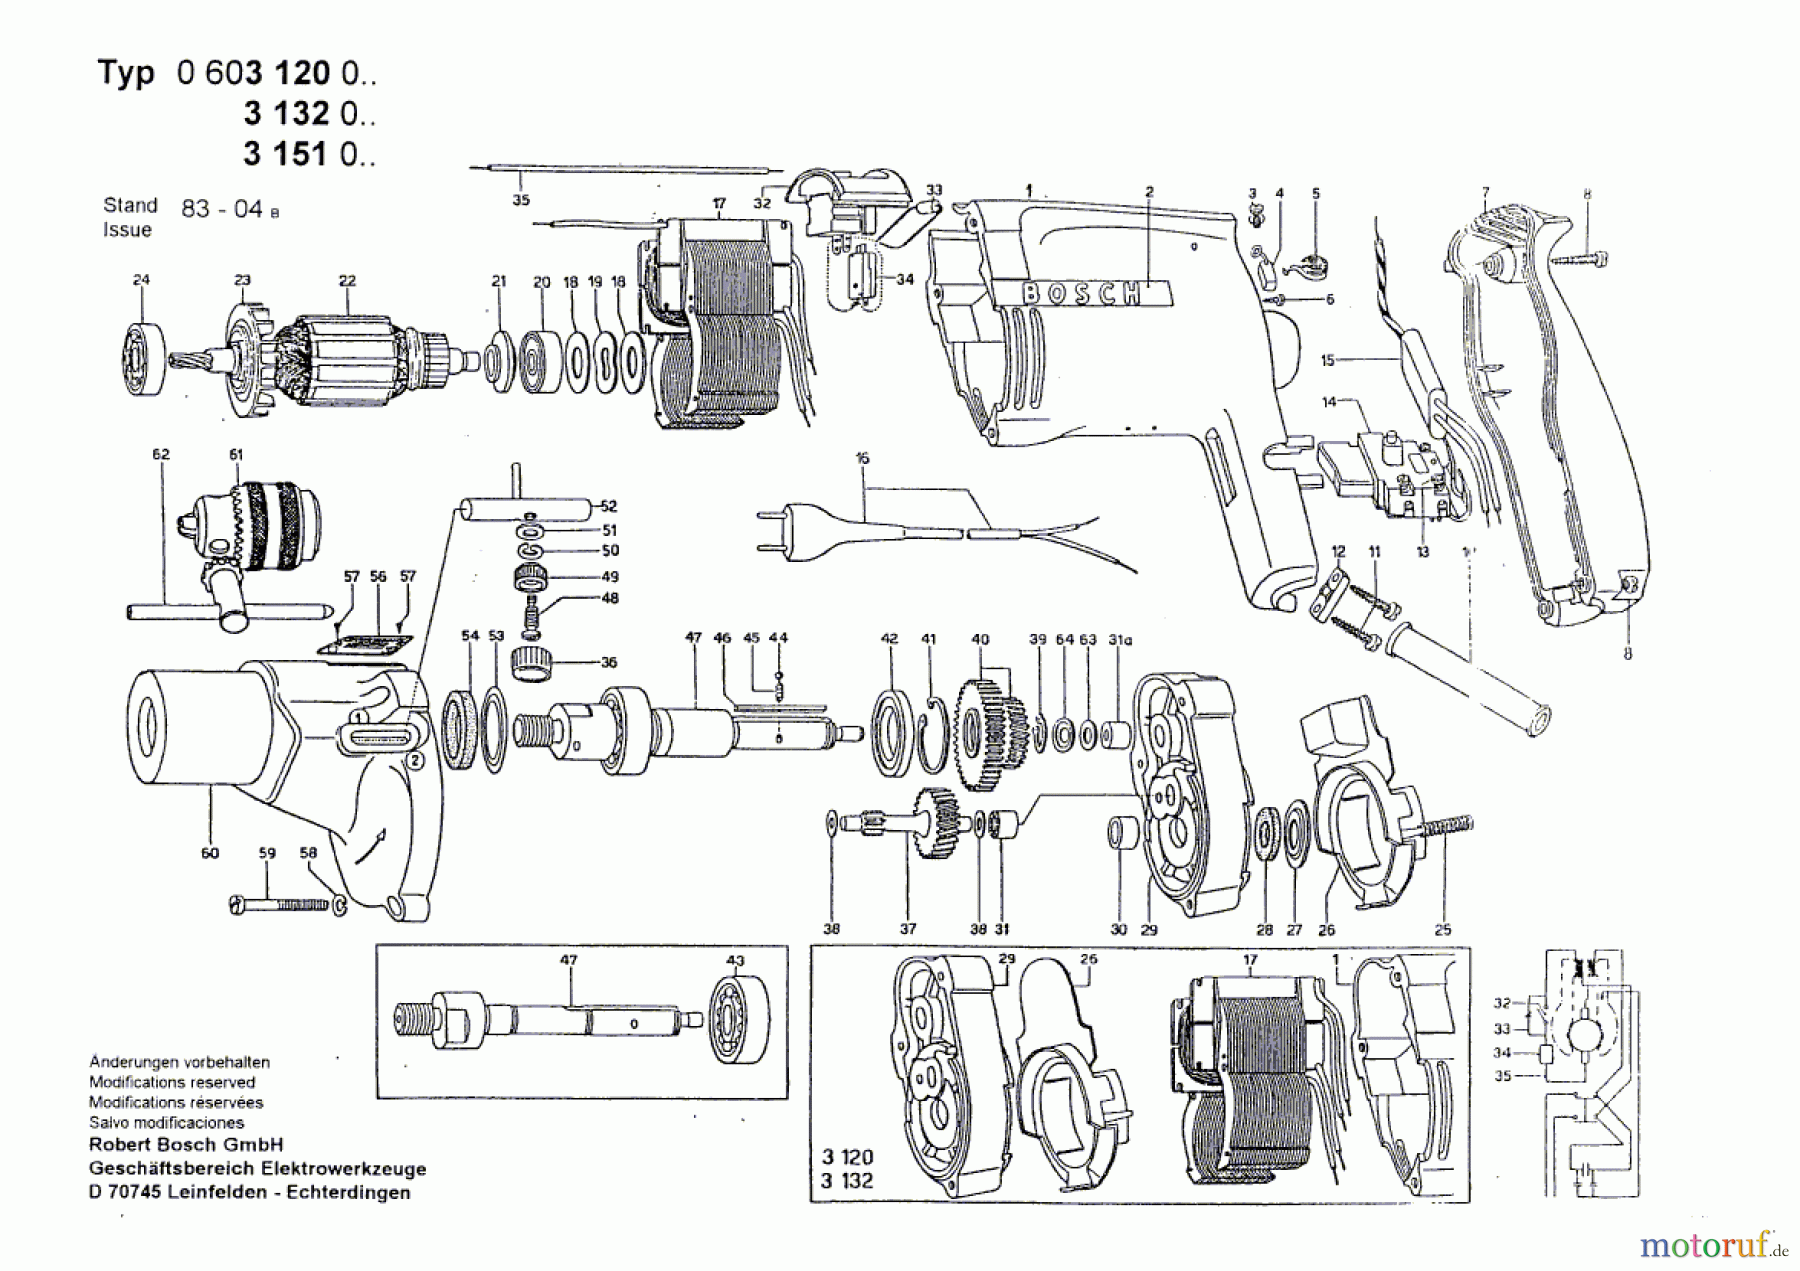  Bosch Werkzeug Bohrmaschine M 21 SO Seite 1